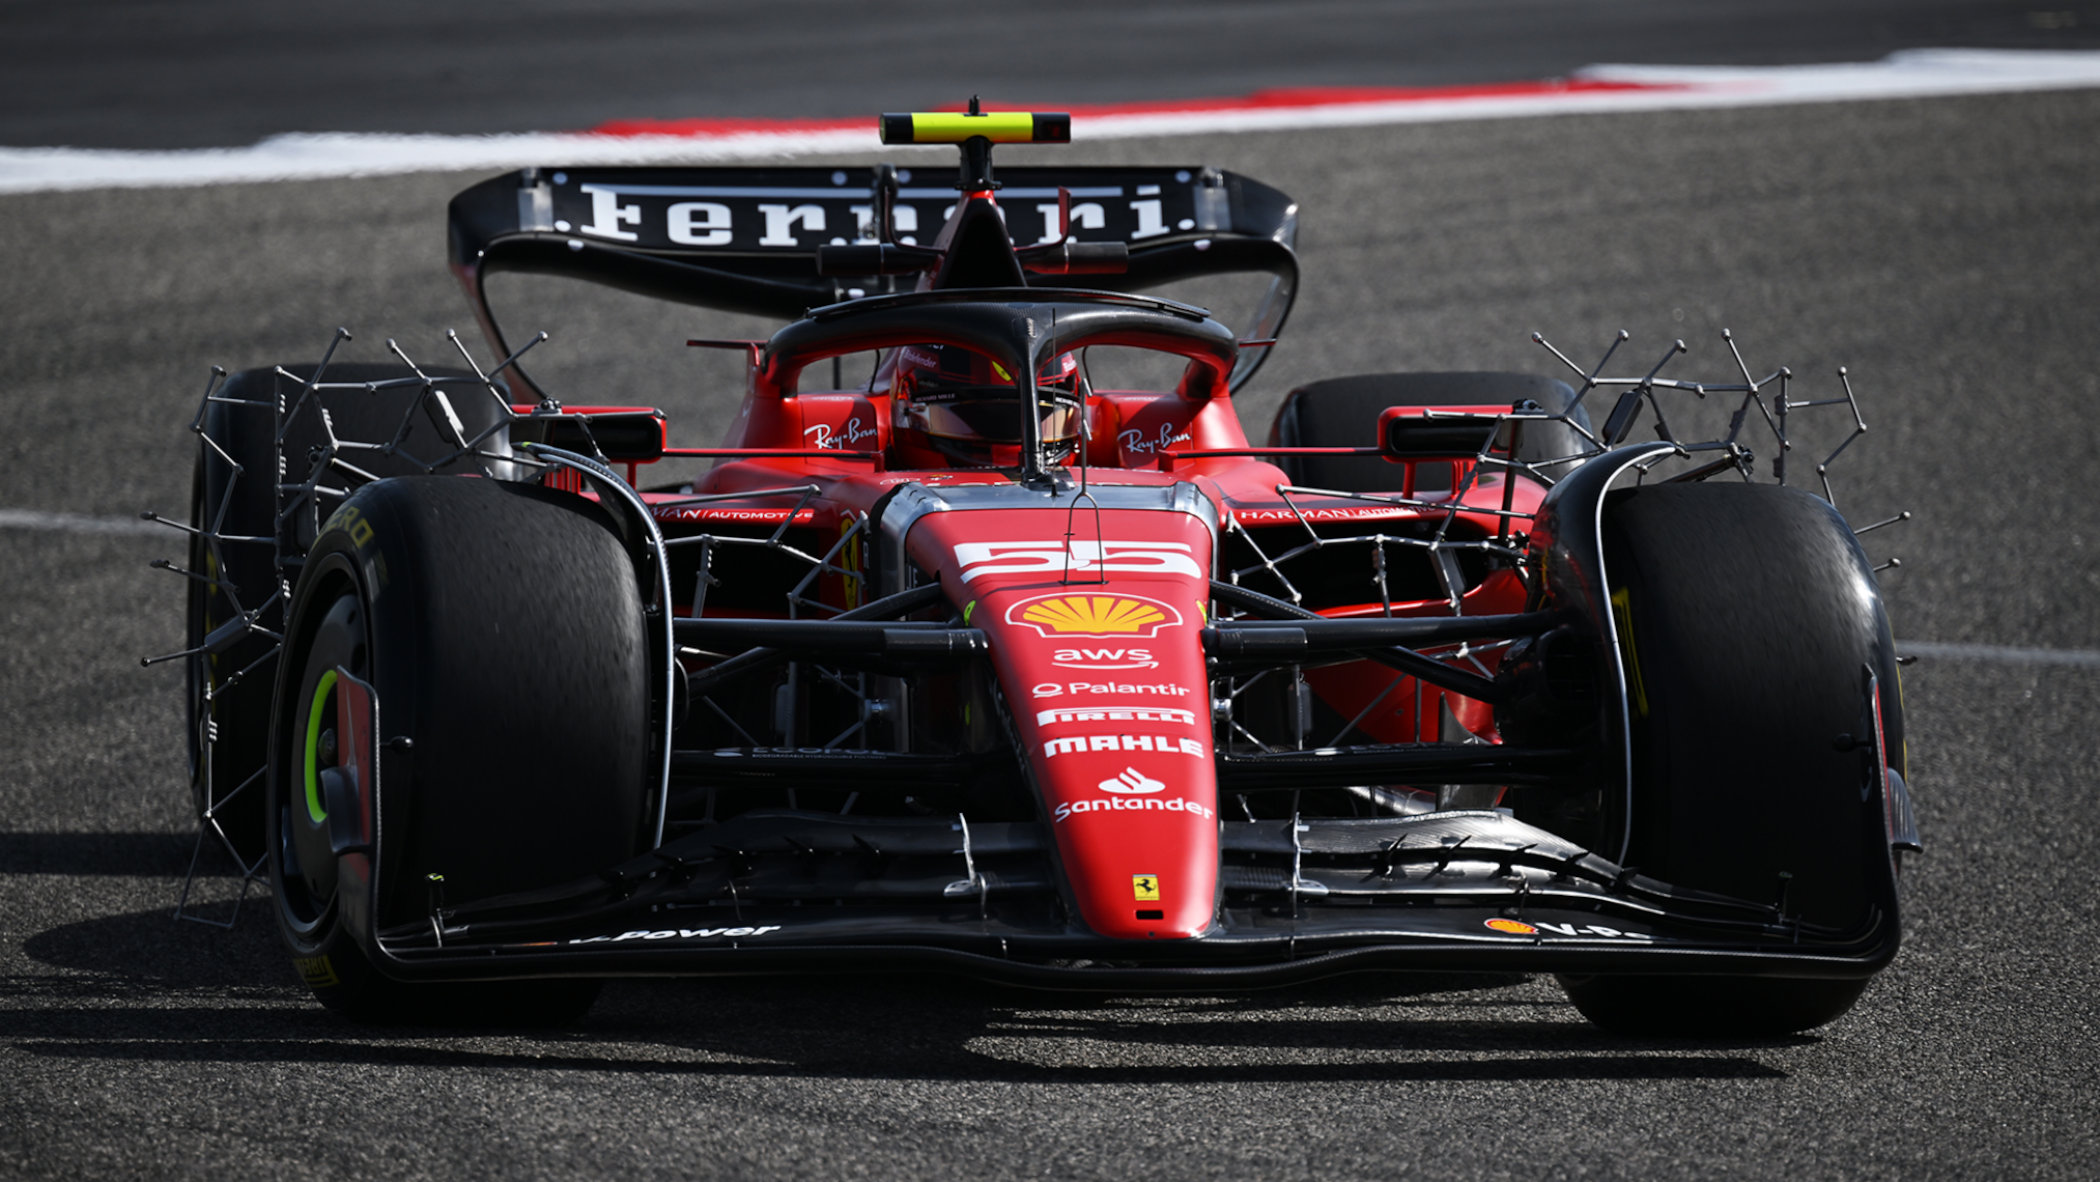 2023 Scuderia Ferrari SF-23 Formula 1 car - Charles Leclerc - Carlos Sainz - Pre-season testing with aero-rakes